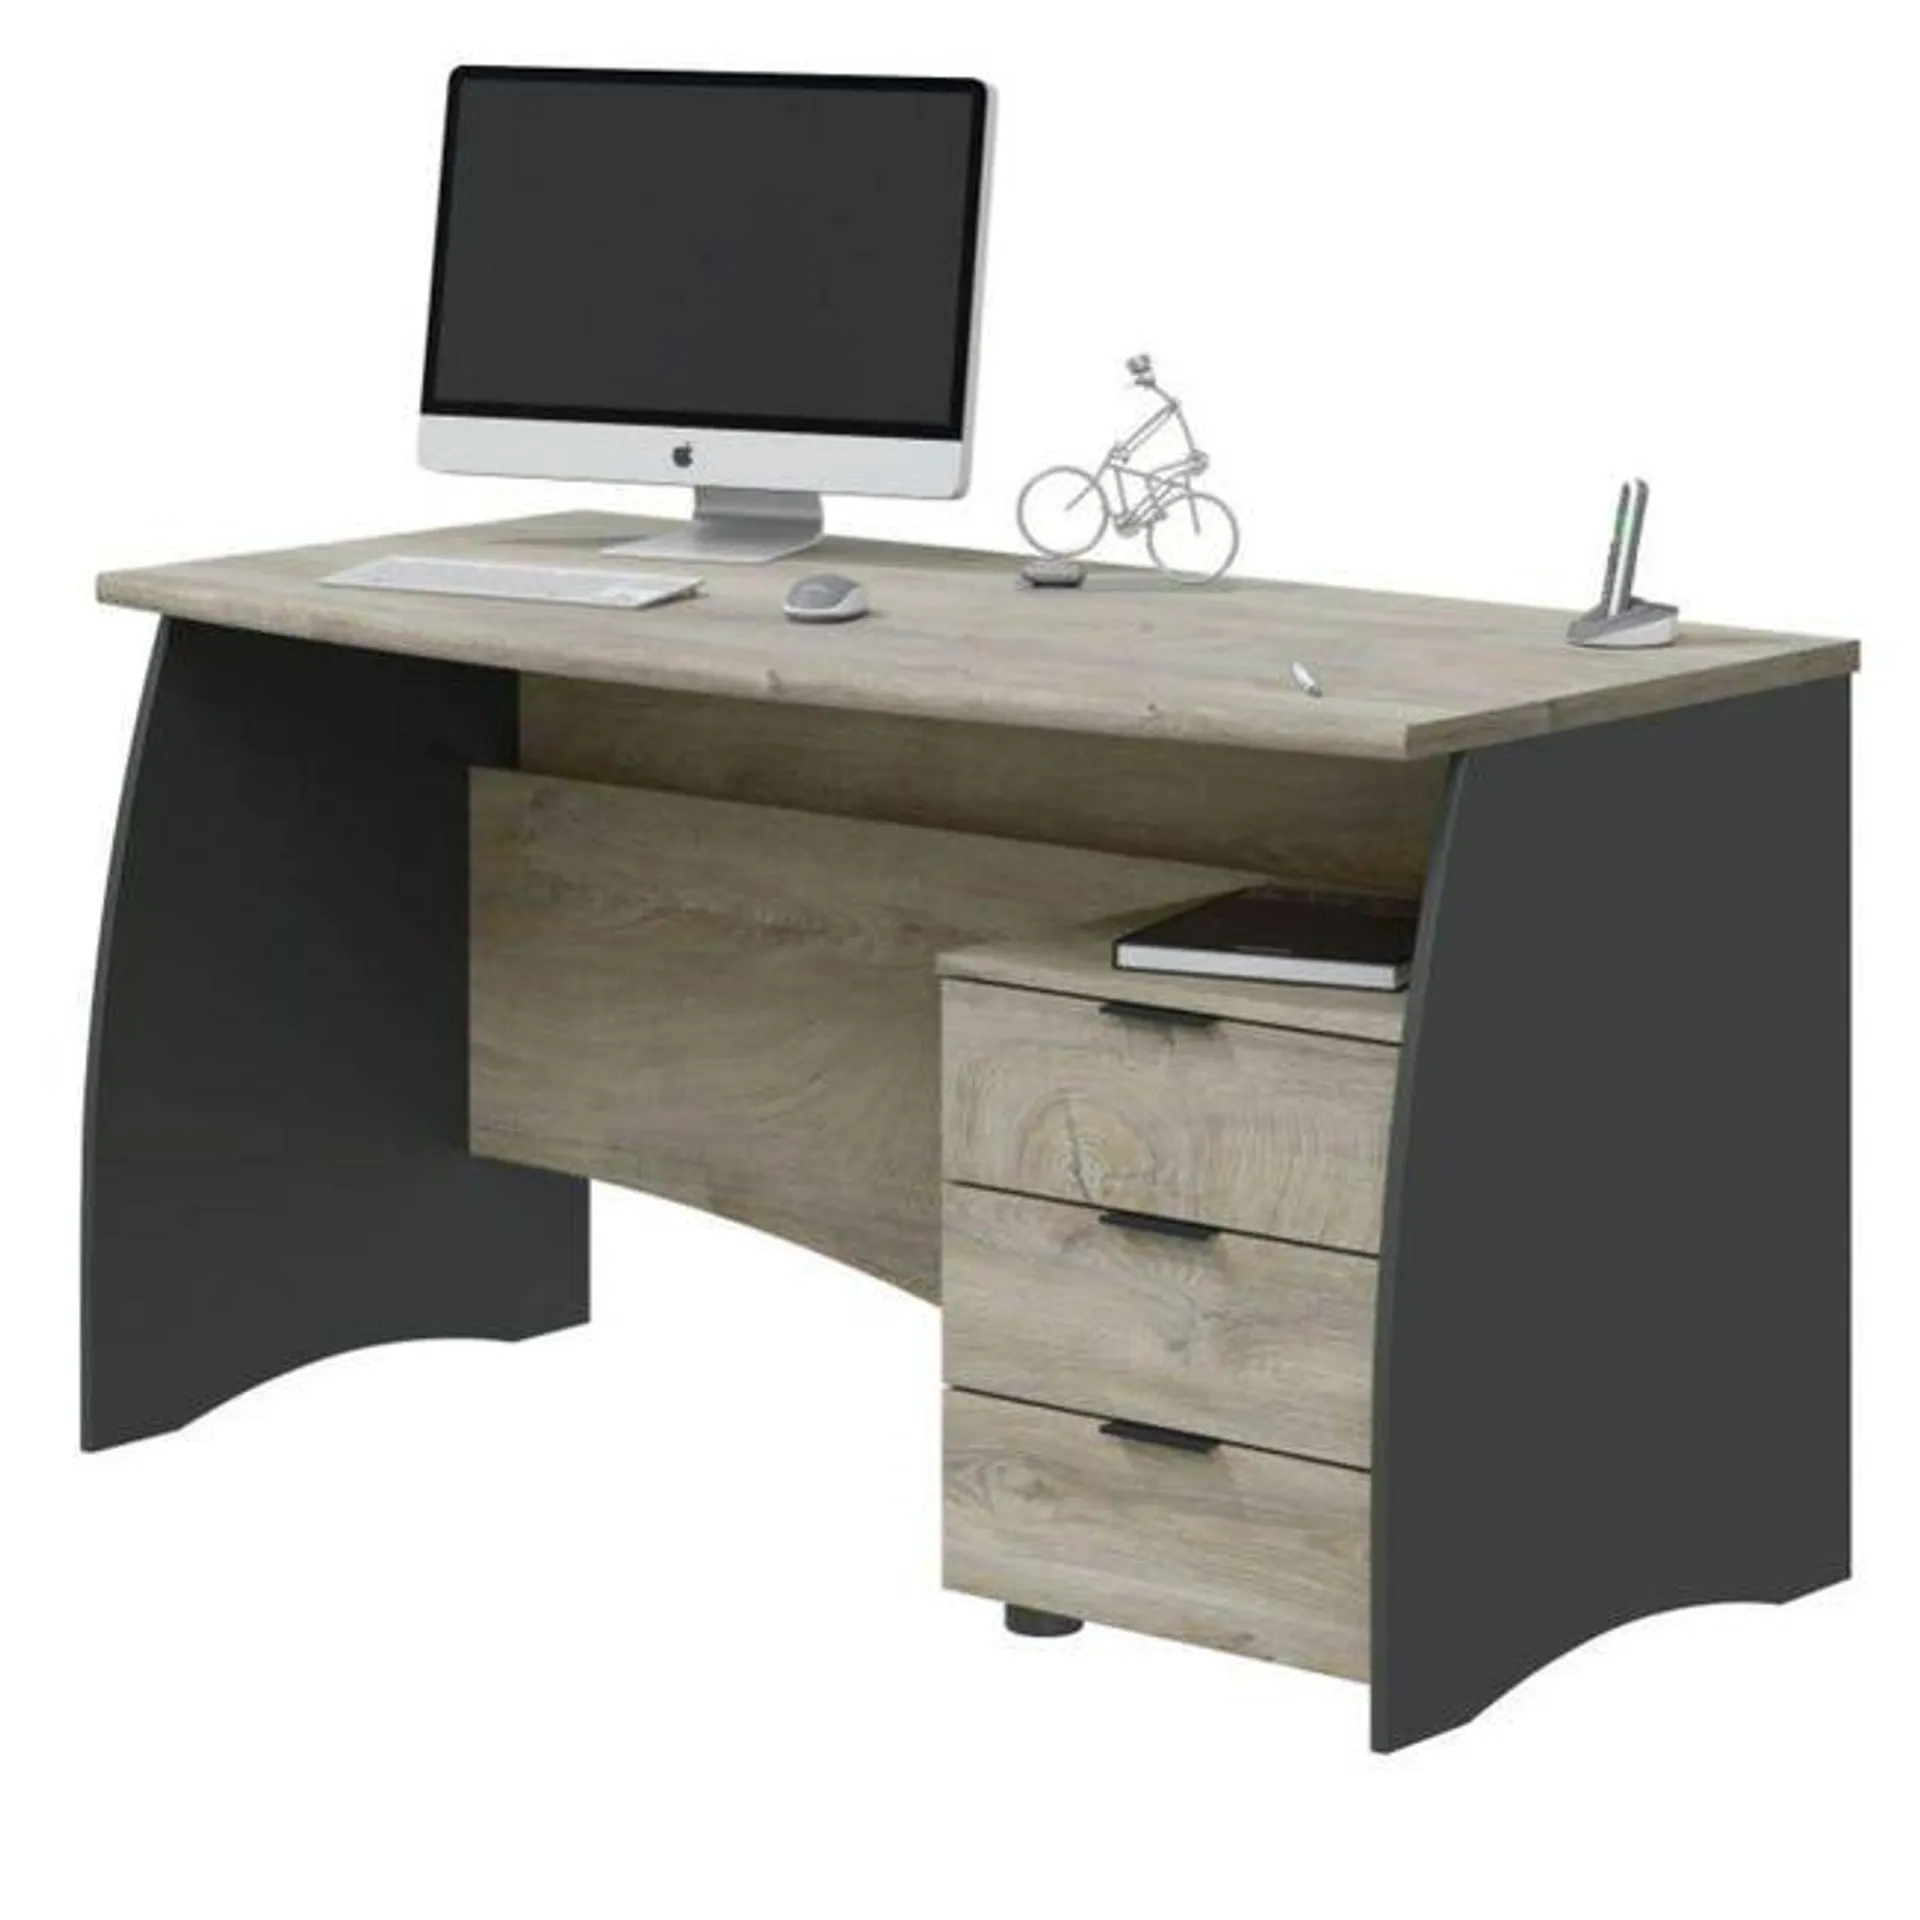 Mesa de escritorio Stil Buc 3 cajones Blanco Artik-Roble Canadian 136 x 74 x 67 cm Ver detalles del producto